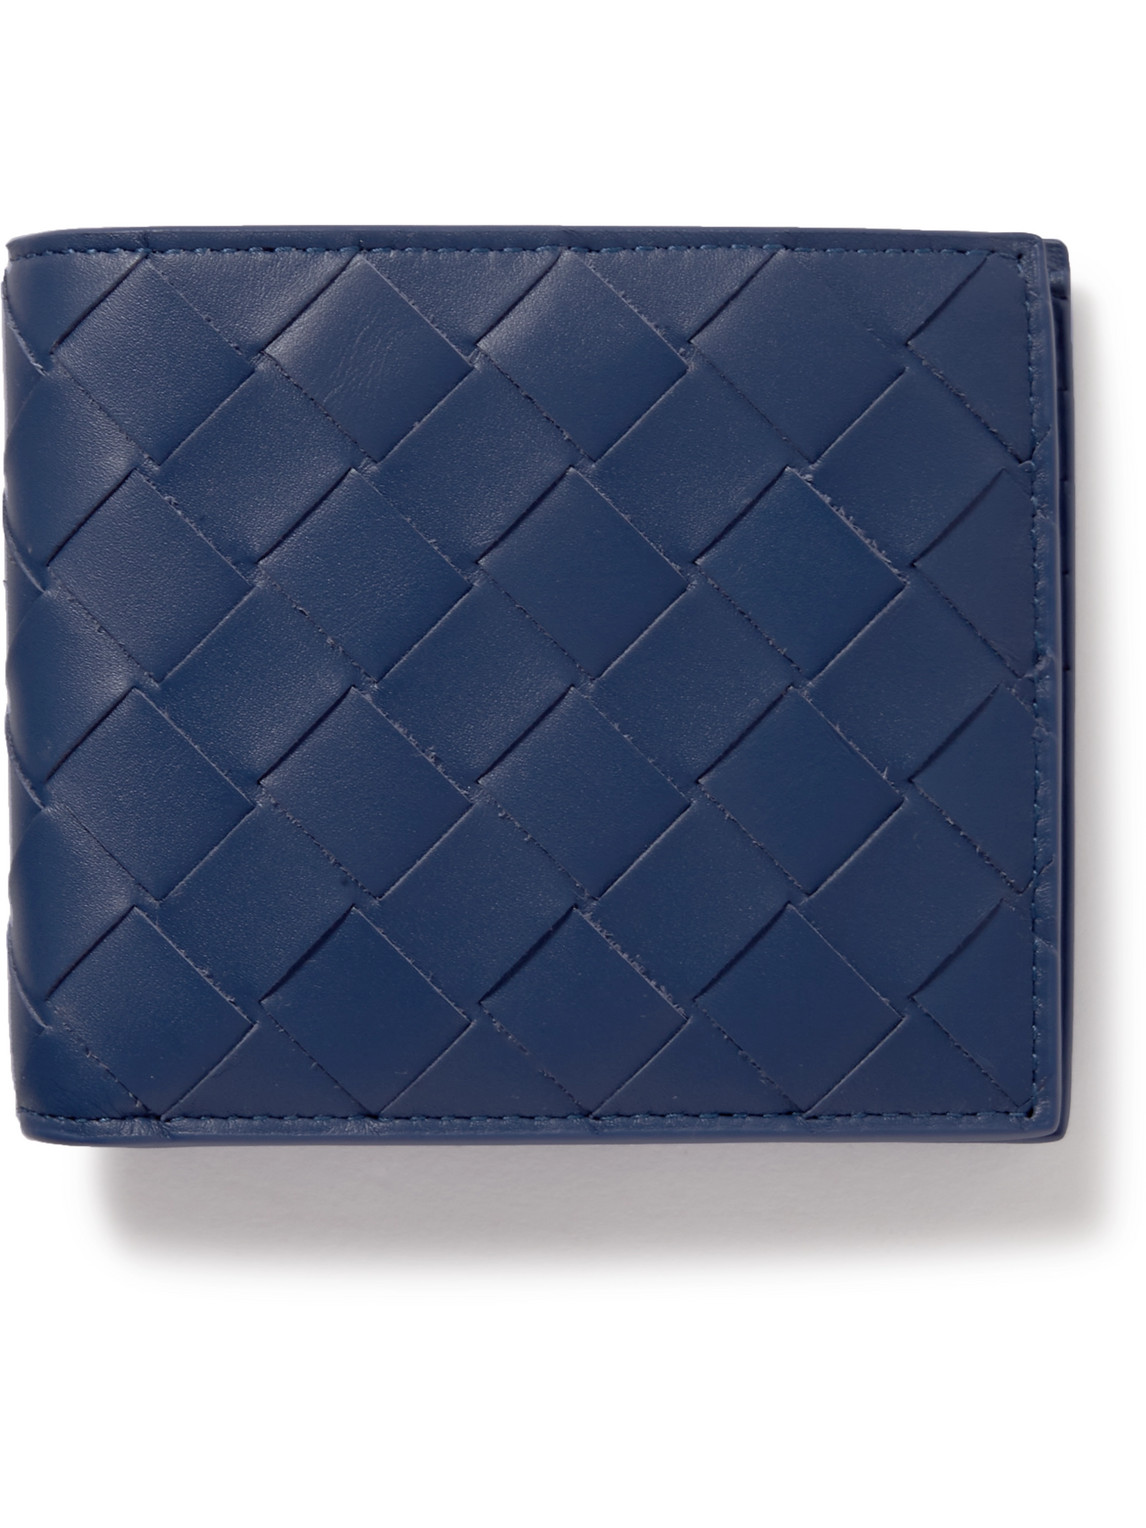 Bottega Veneta Intrecciato Leather Billfold Wallet In Sky Blue